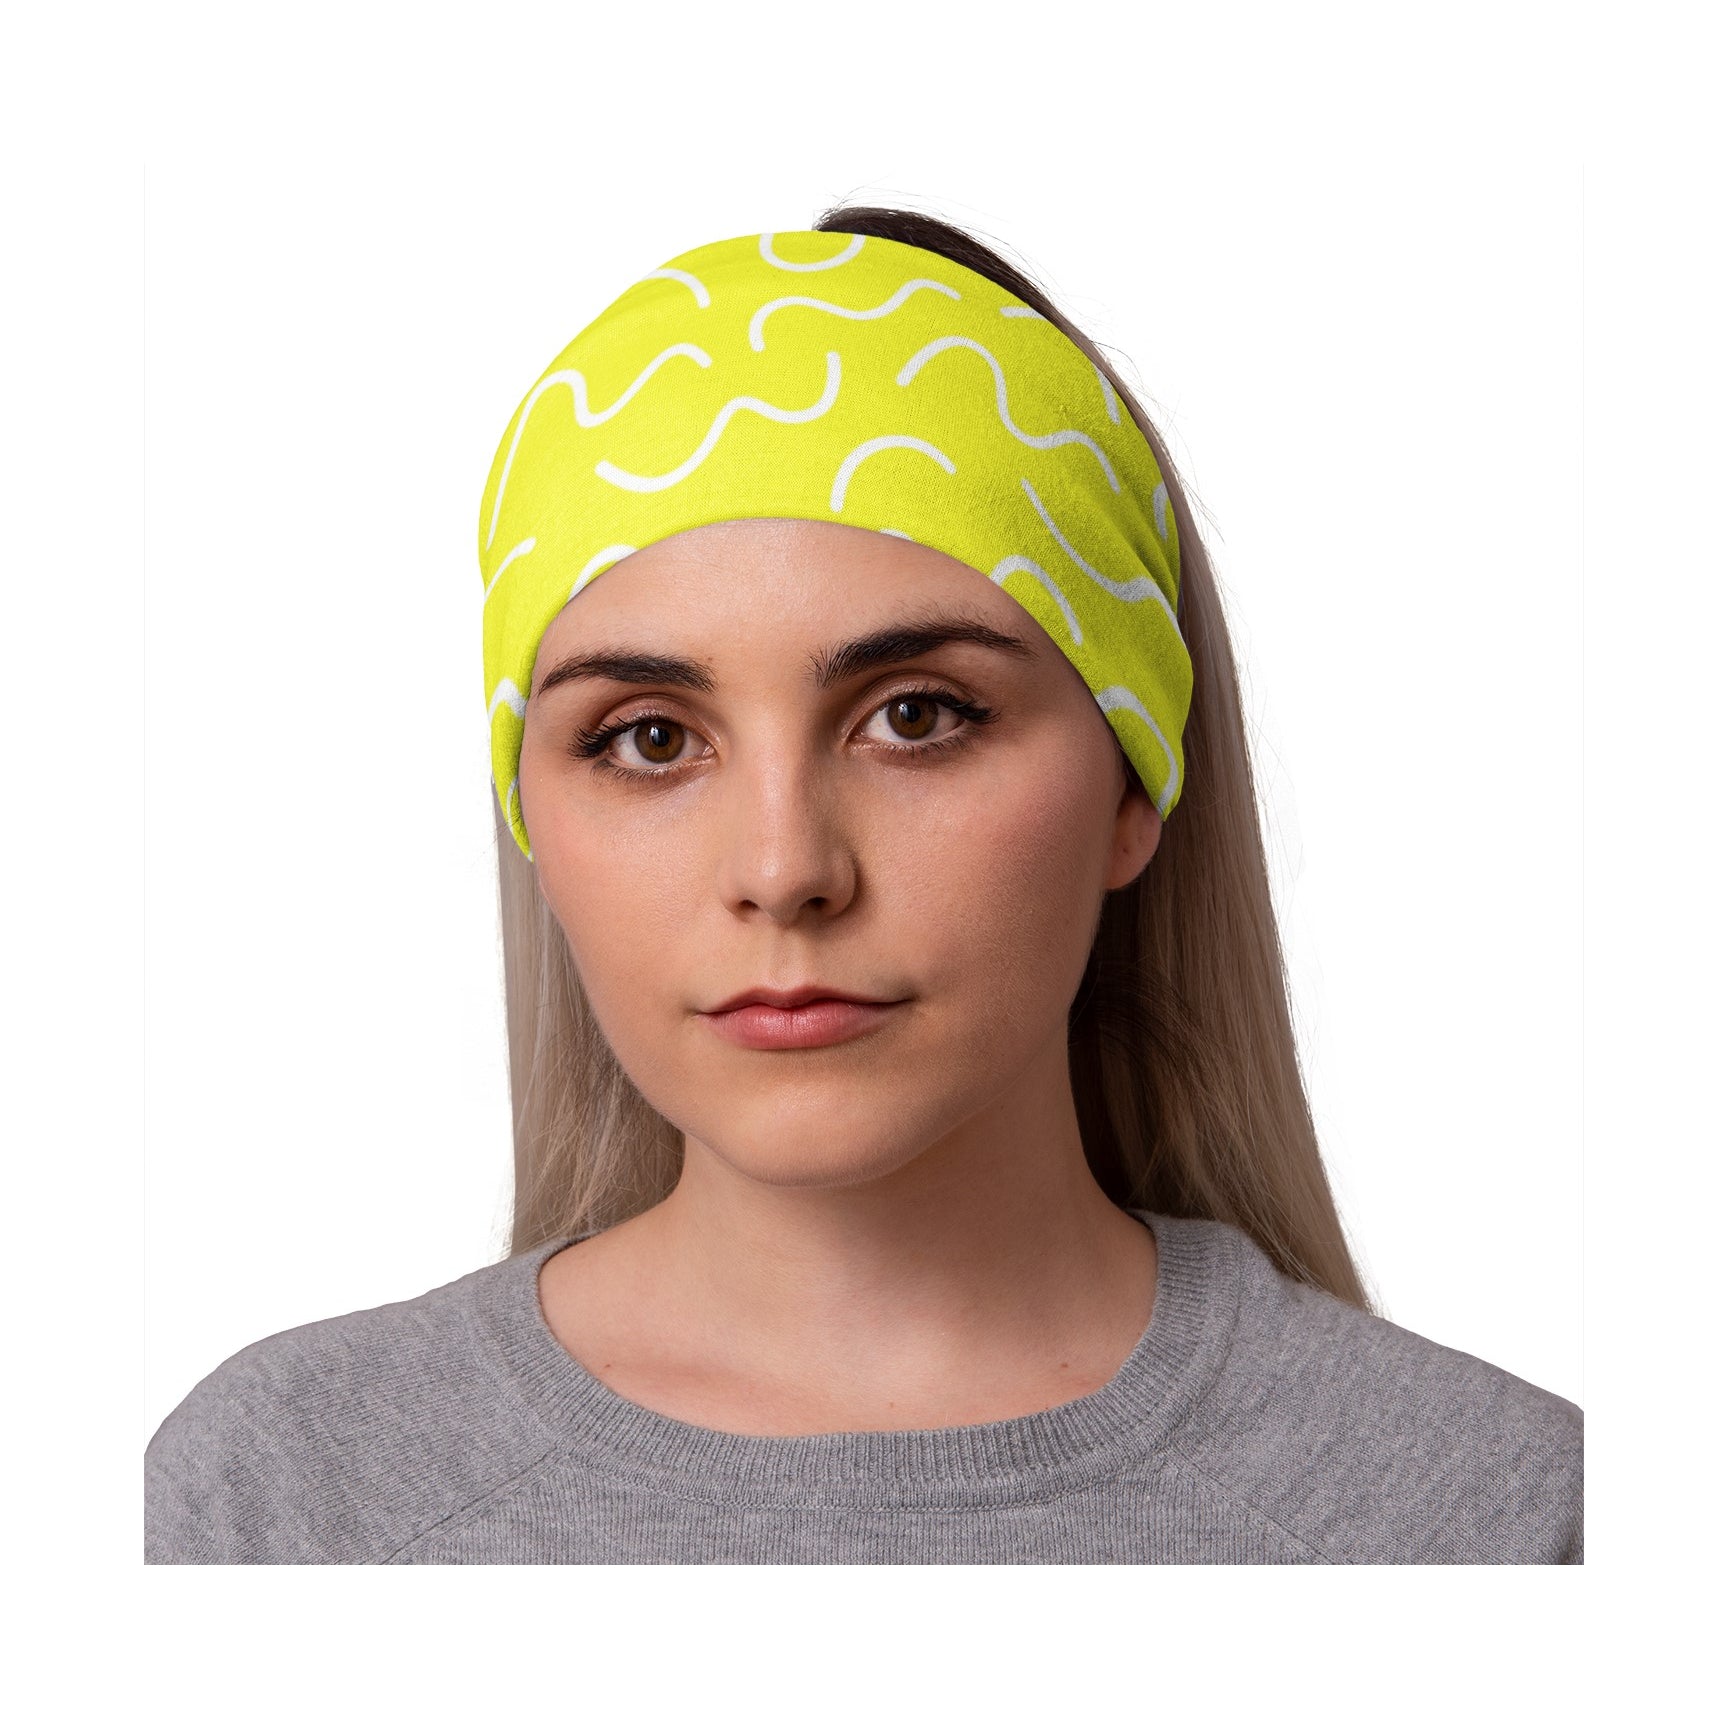 Lunabands Yellow & White Core Multi use Running Bandana Headband